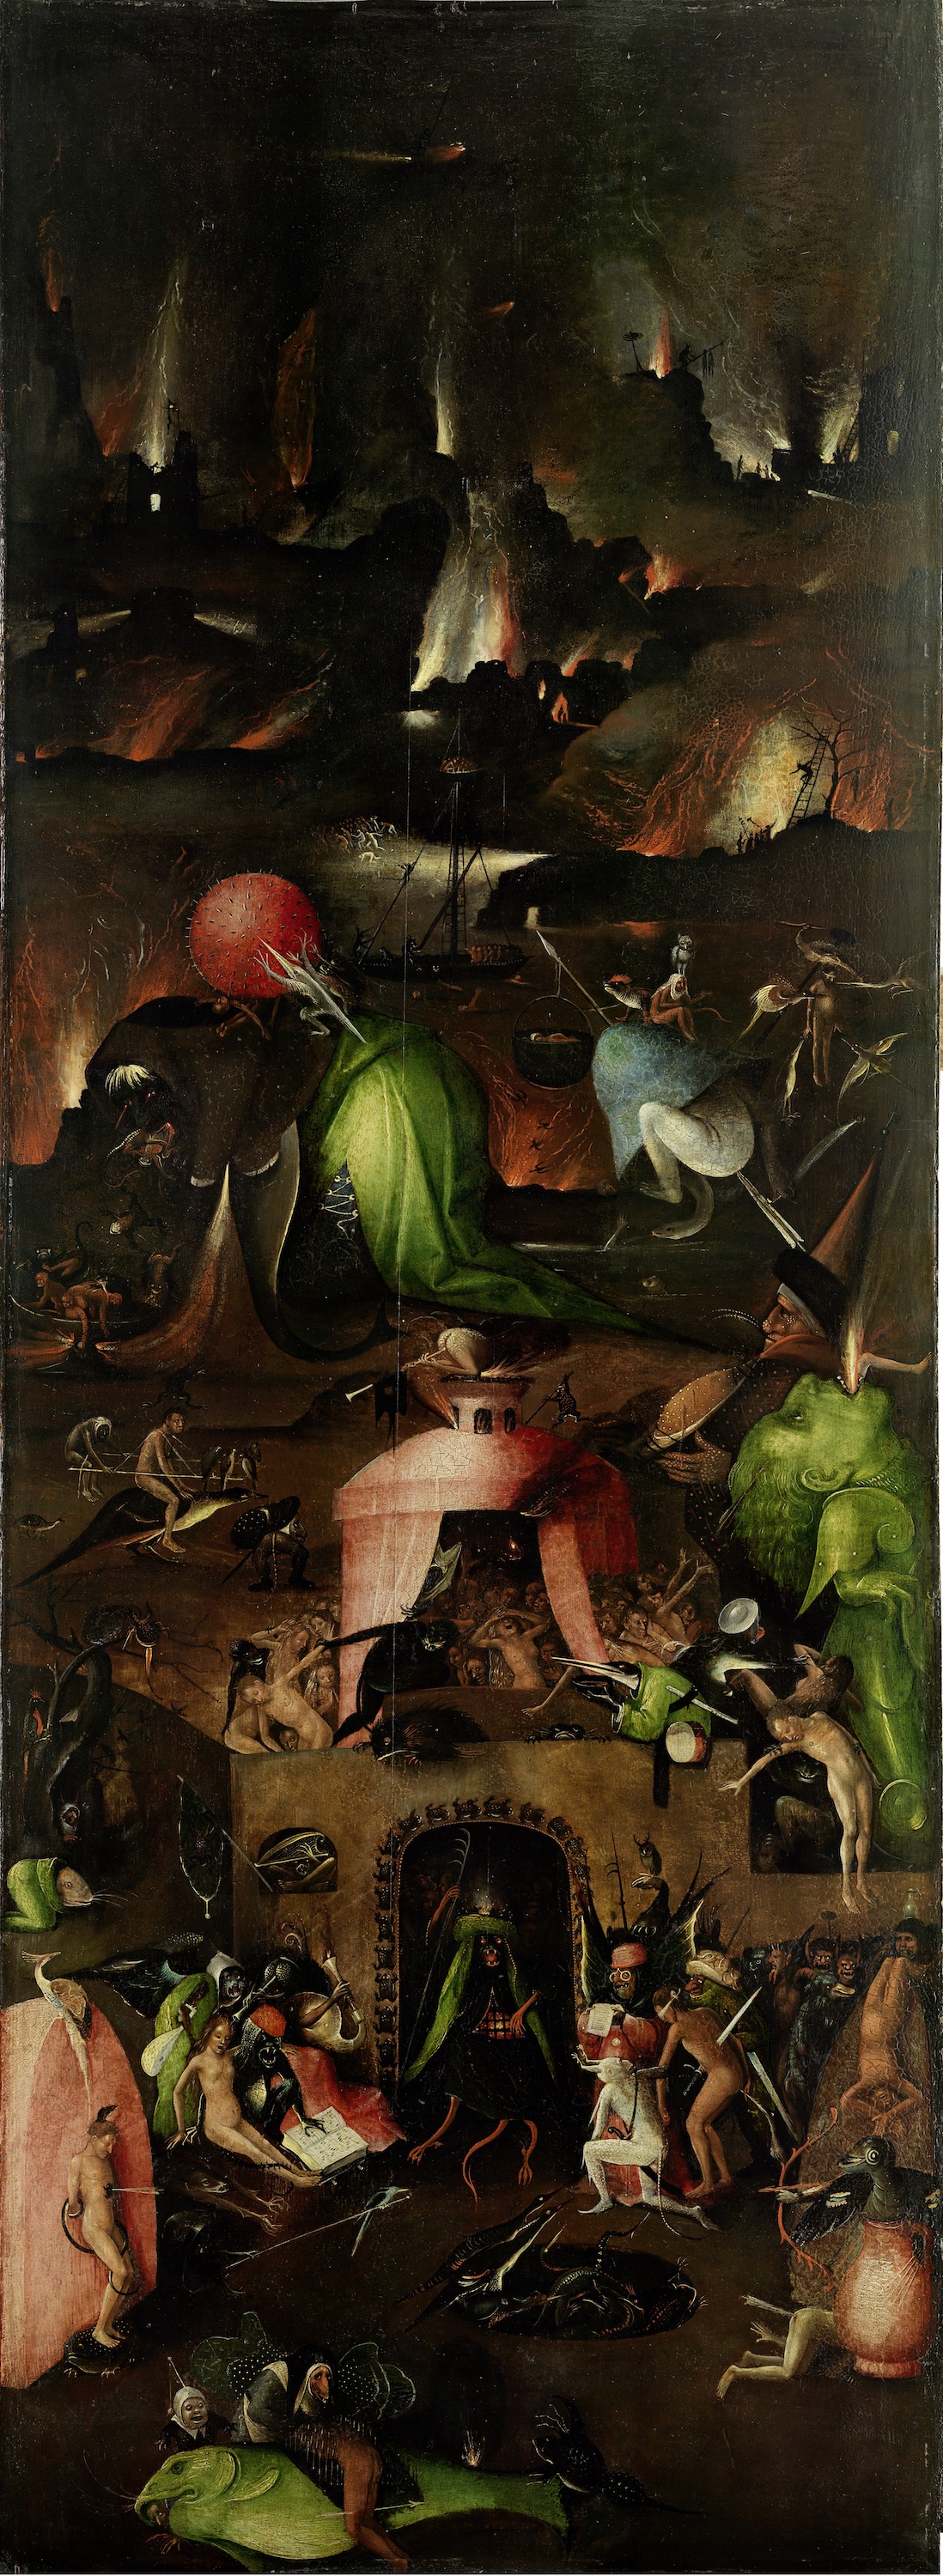 Triptyque du Jugement Dernier - panneau de droite par Hieronymus Bosch by Hieronymus Bosch - c. 1500 Académie des beaux-arts de Vienne